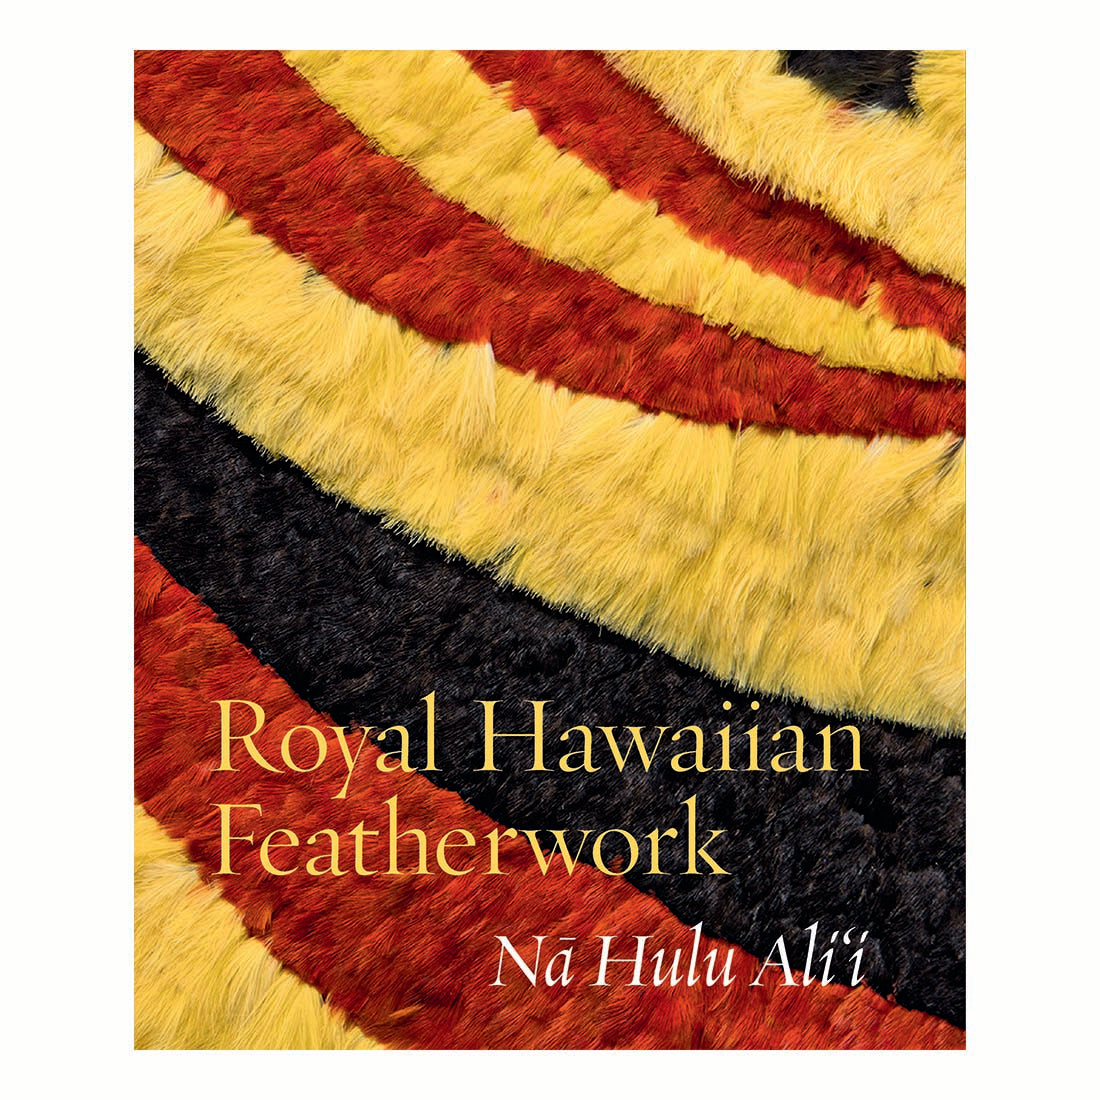 Royal Hawaiian Featherwork